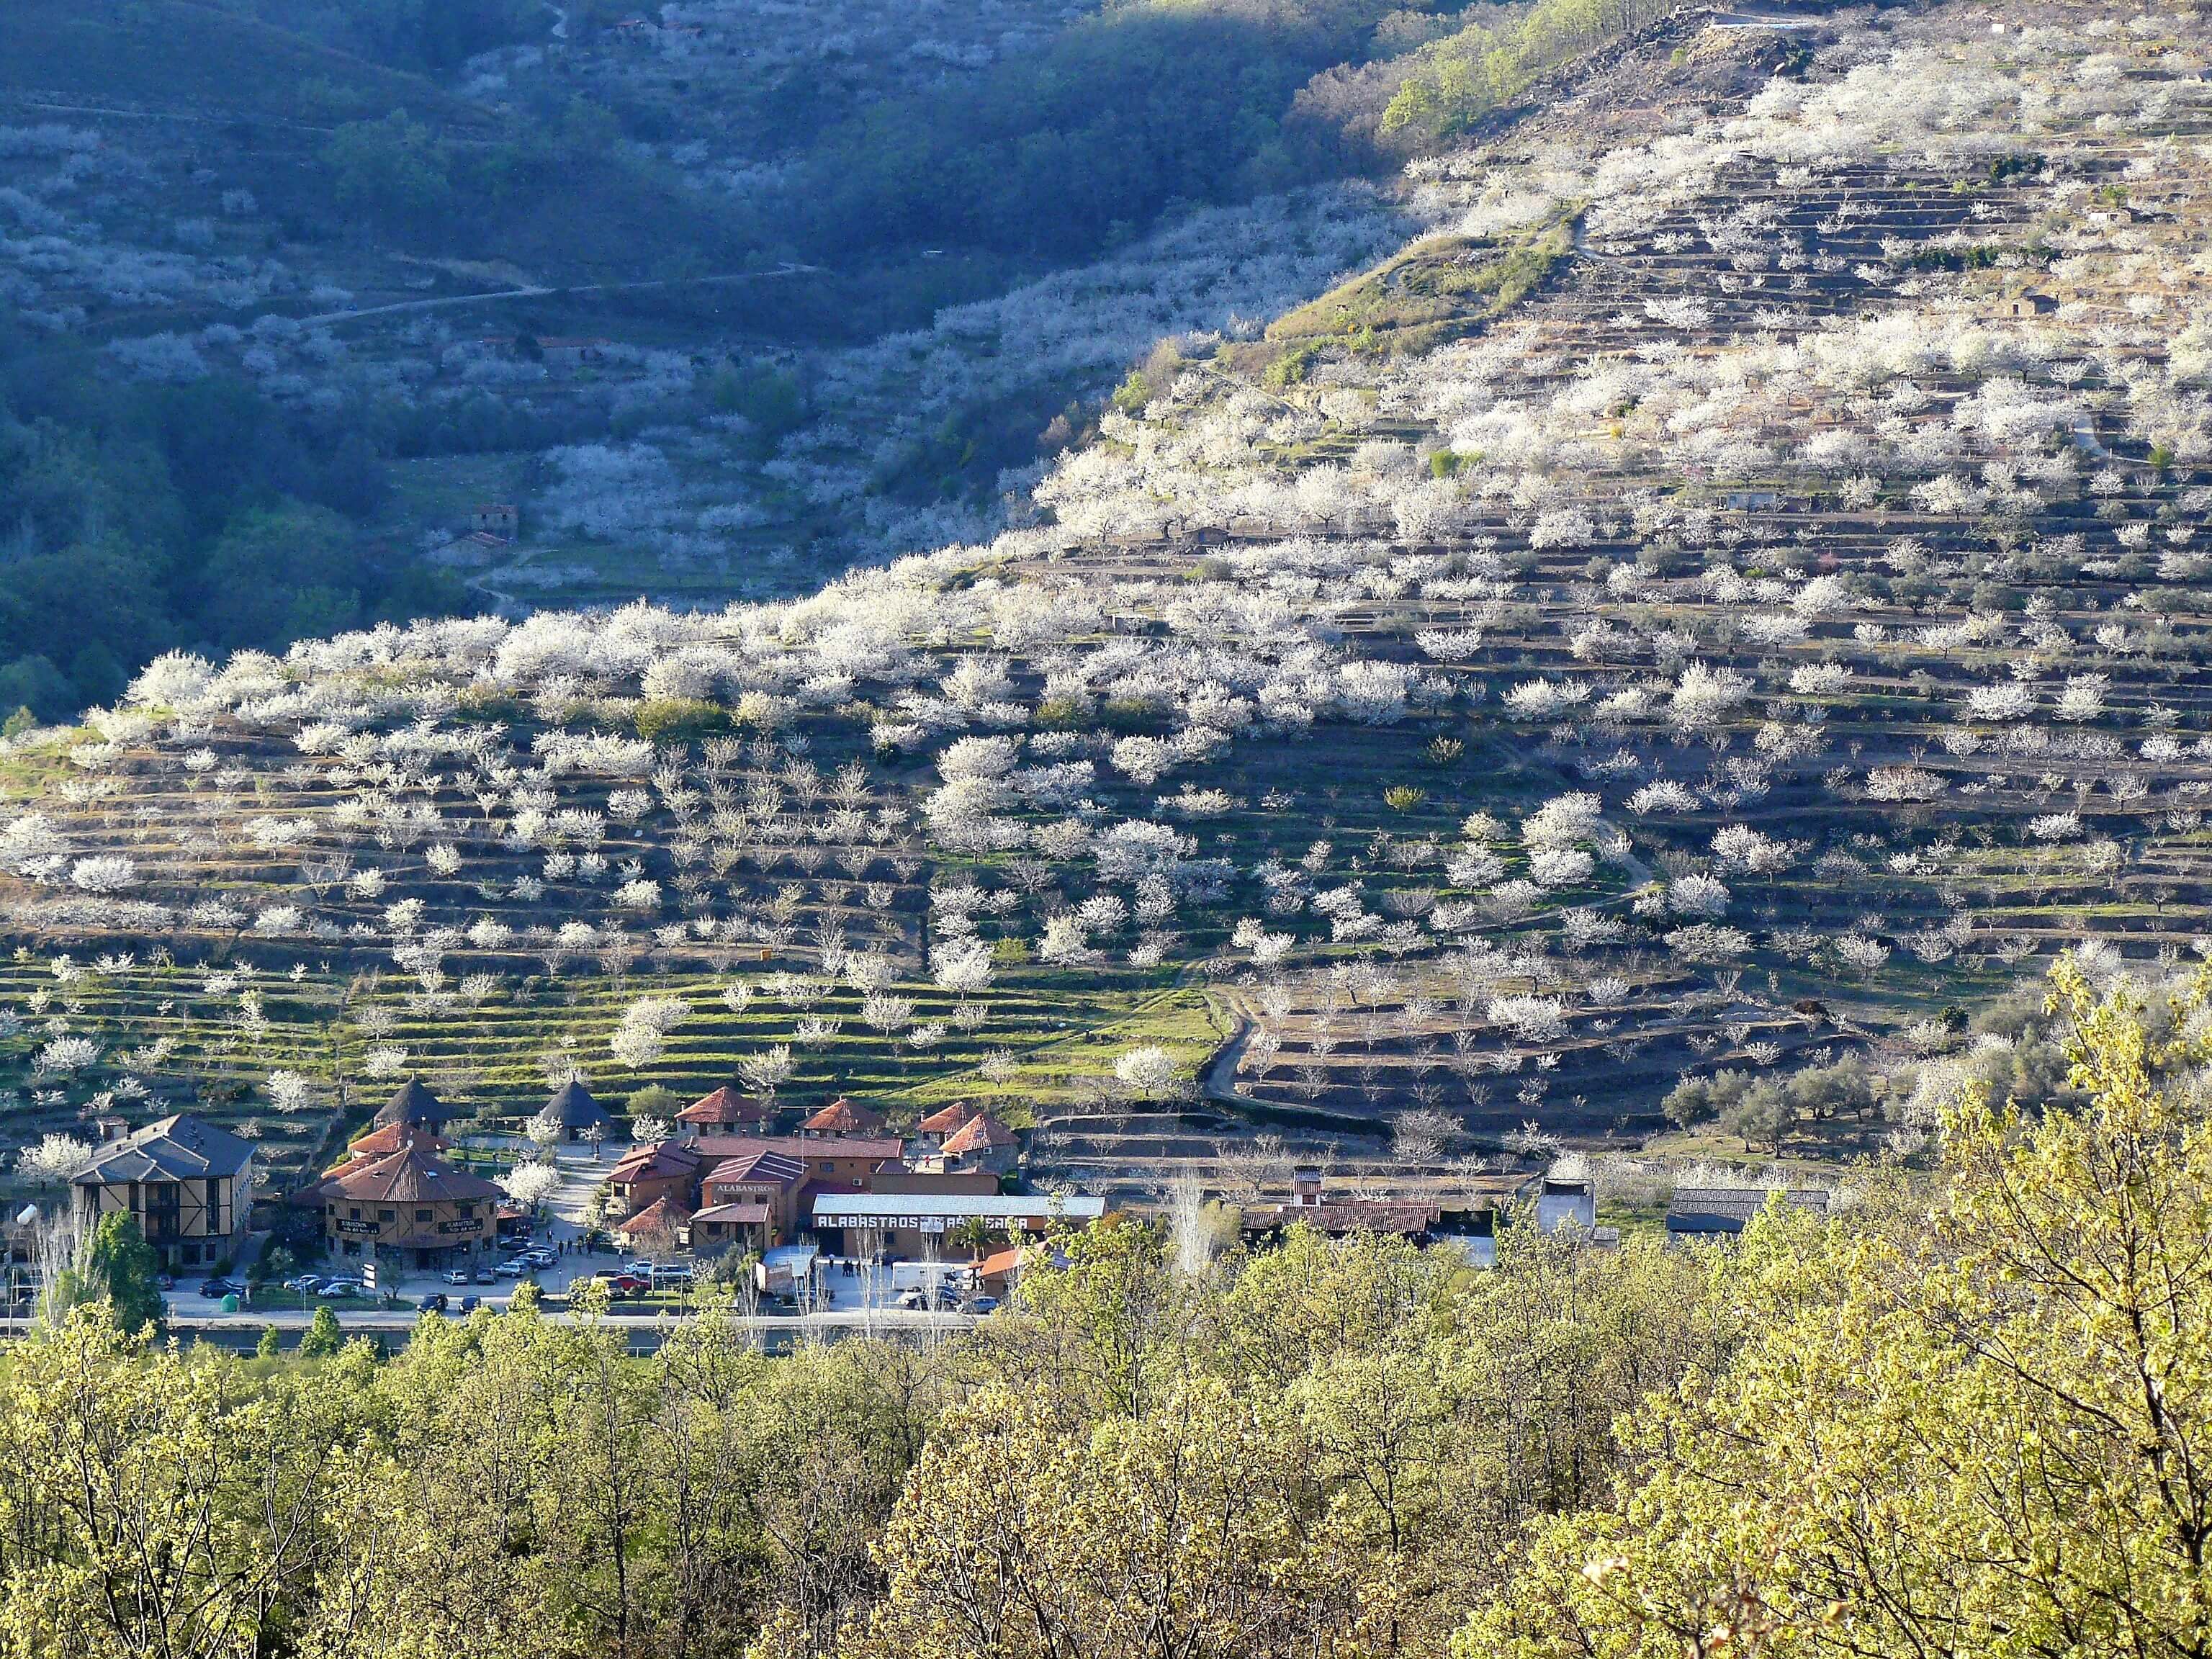 Jerte Valley, Spain